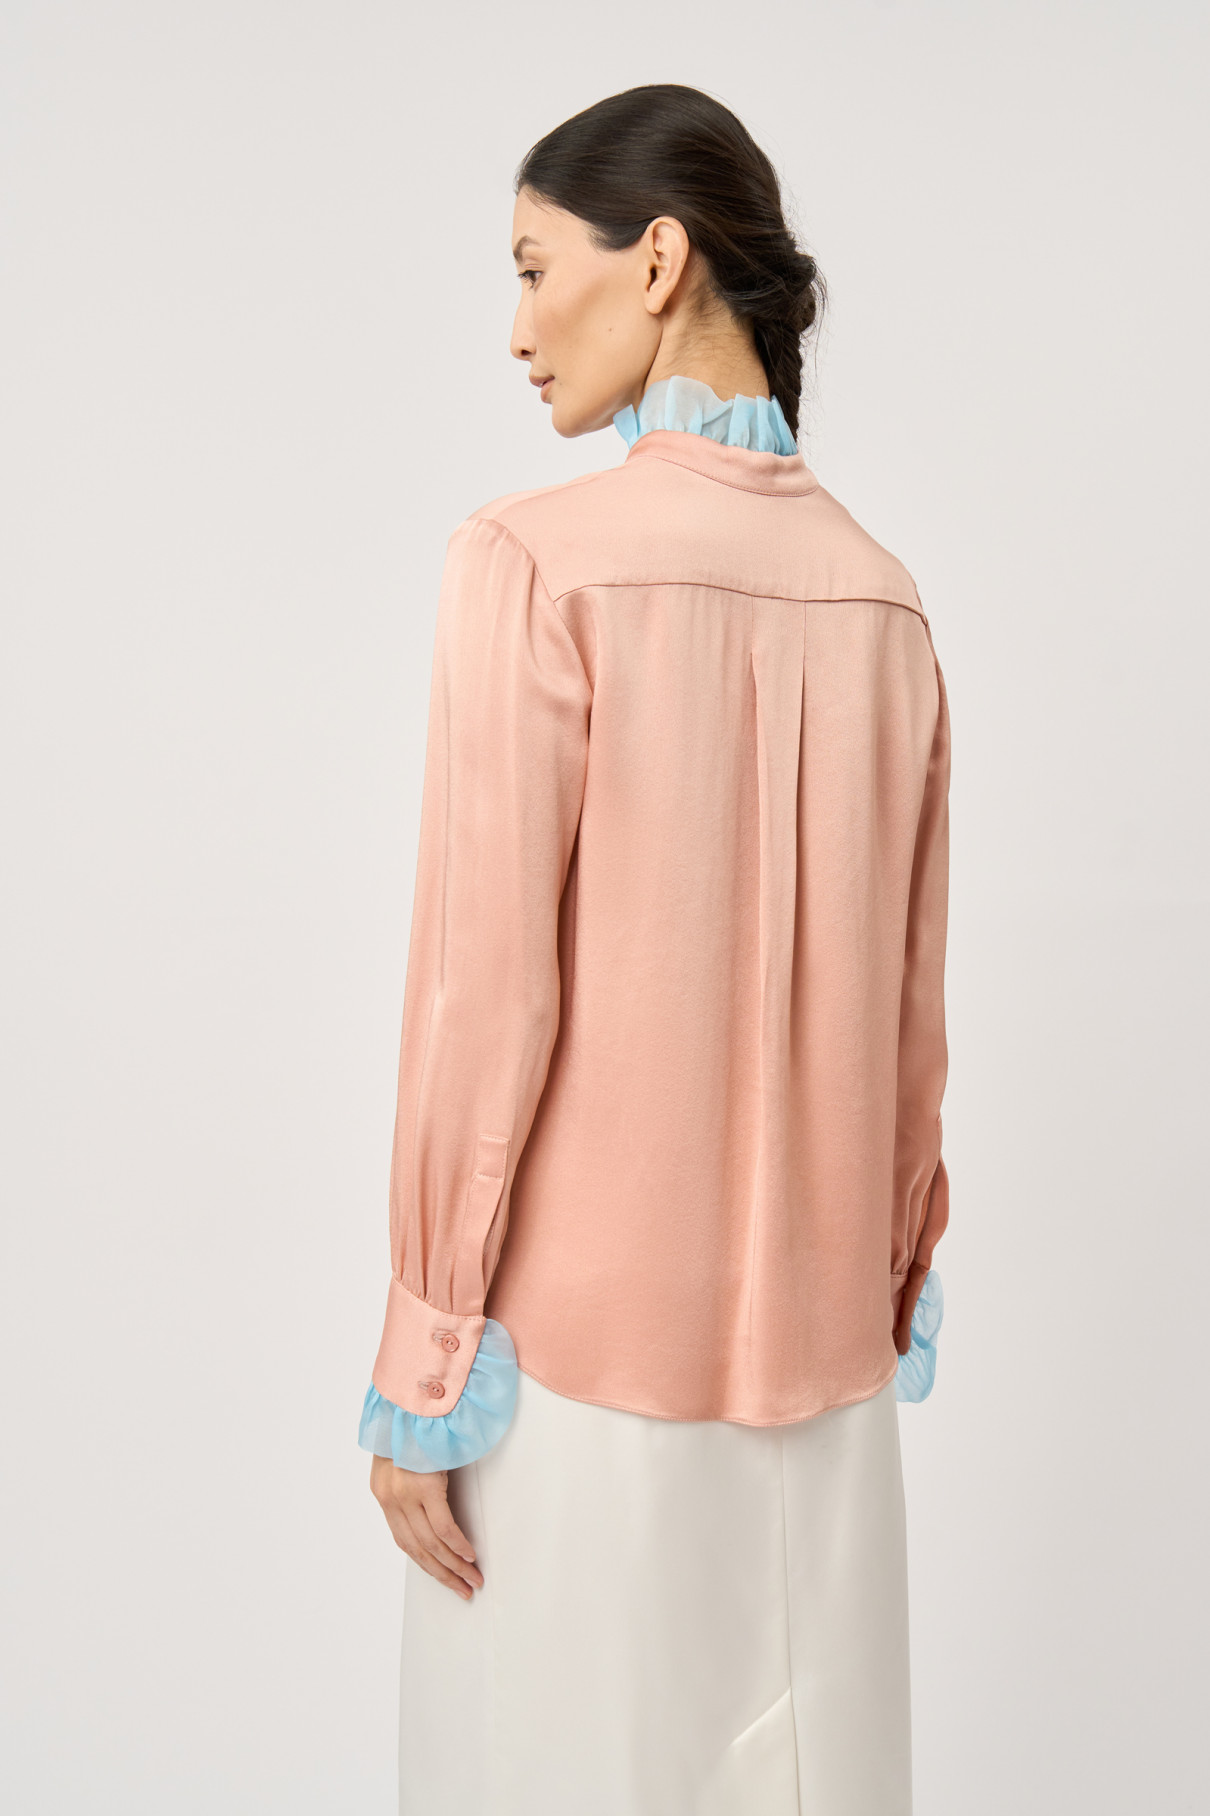 FR20-РН-3-рз-4 Розовая блуза с отделкой органзой , Розовый, арт. FR20-РН-3-рз-4 купить в интернет-магазине